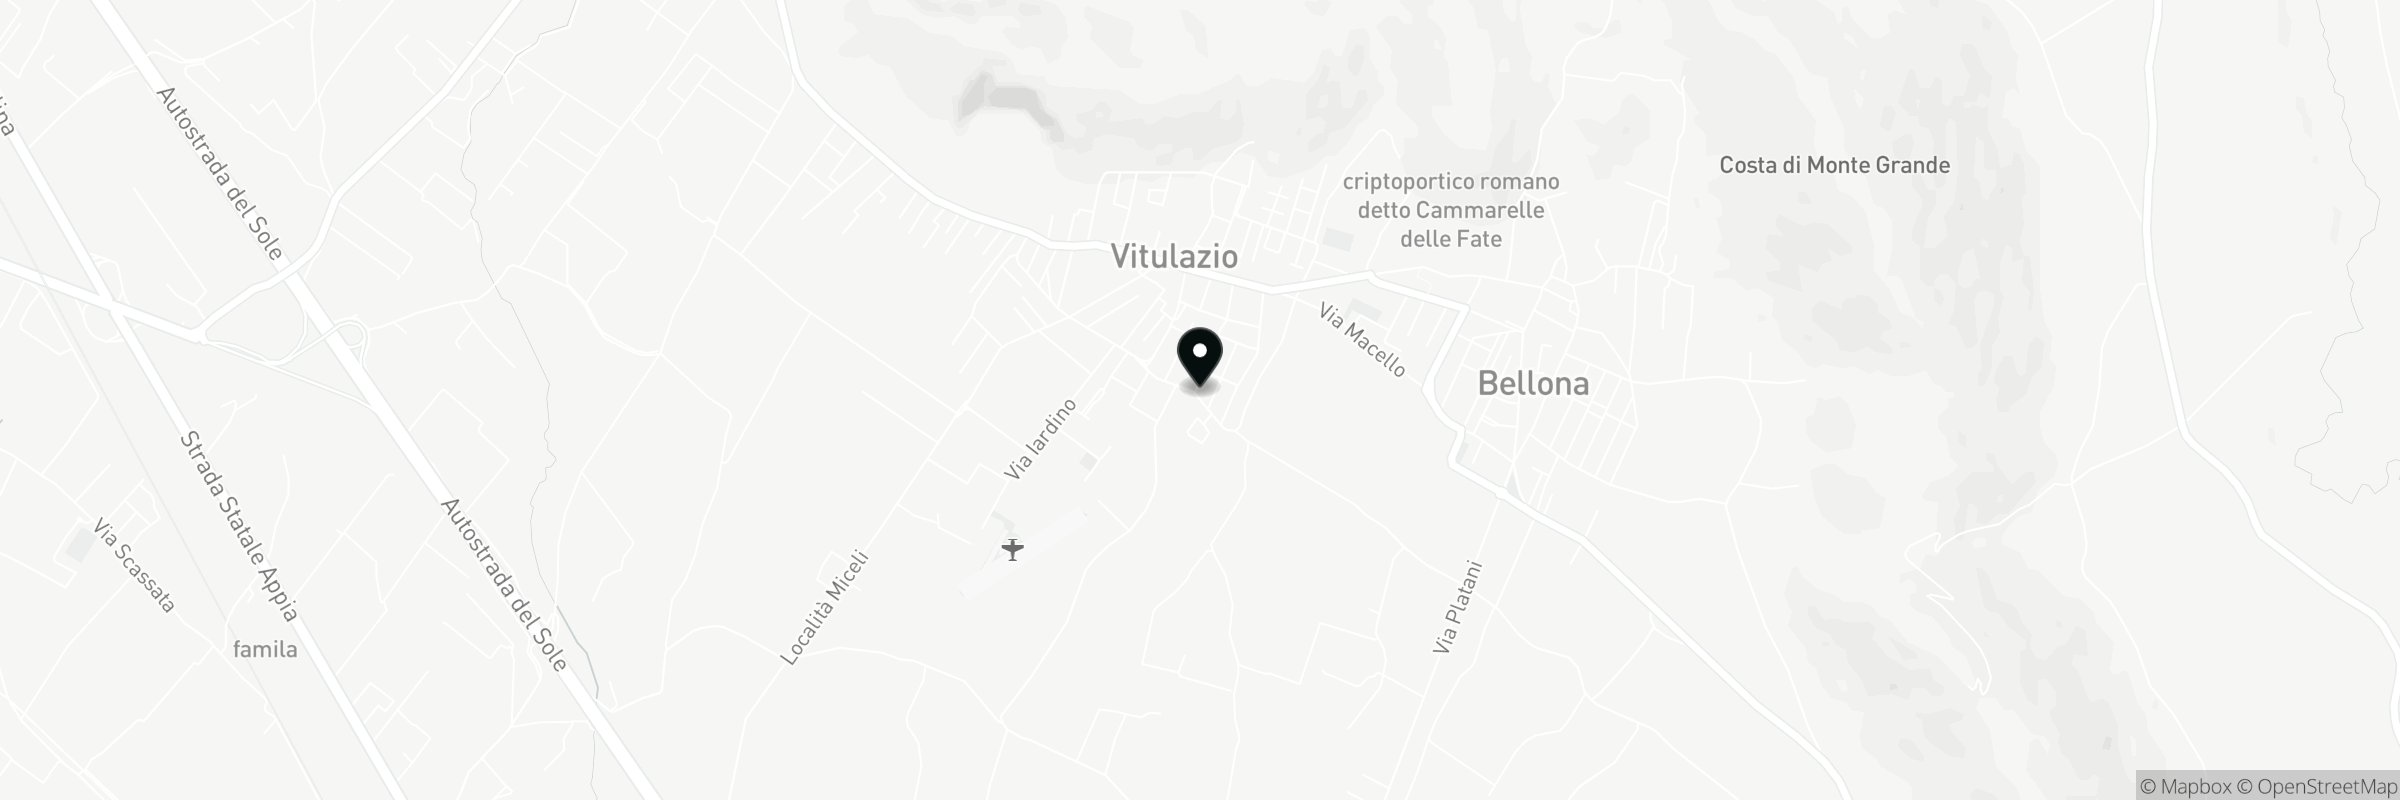 Die Karte zeigt die Adresse von Vijo Restaurant